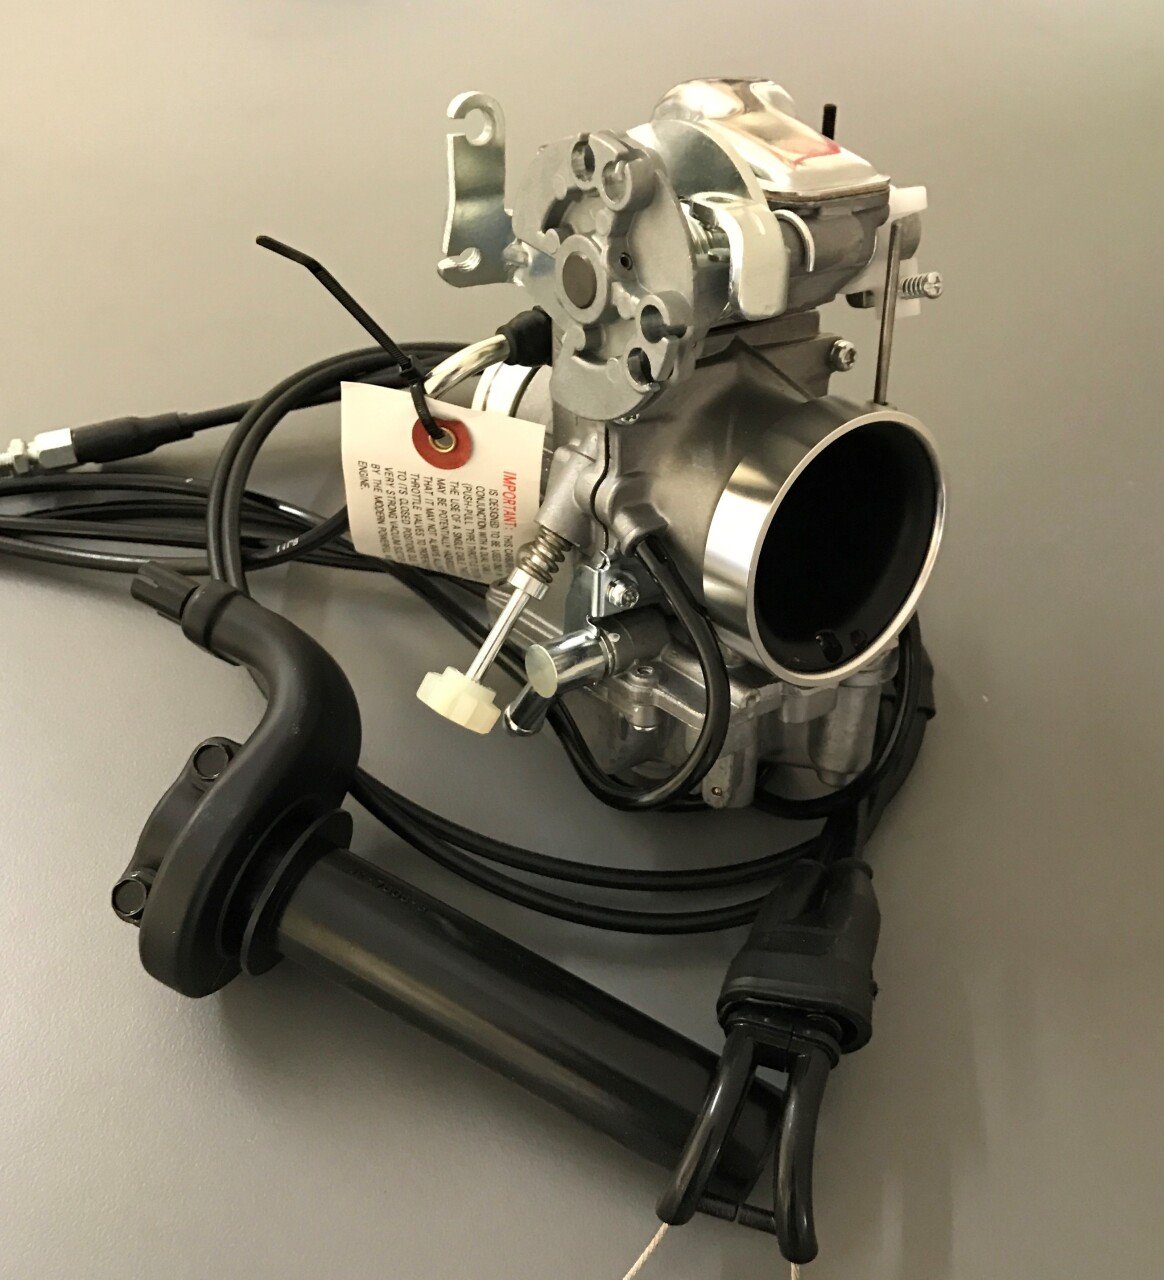 SAVE XR400 Mikuni TM36-31 Racing/Enduro Carburetor Kit incl. Throttle Assembly